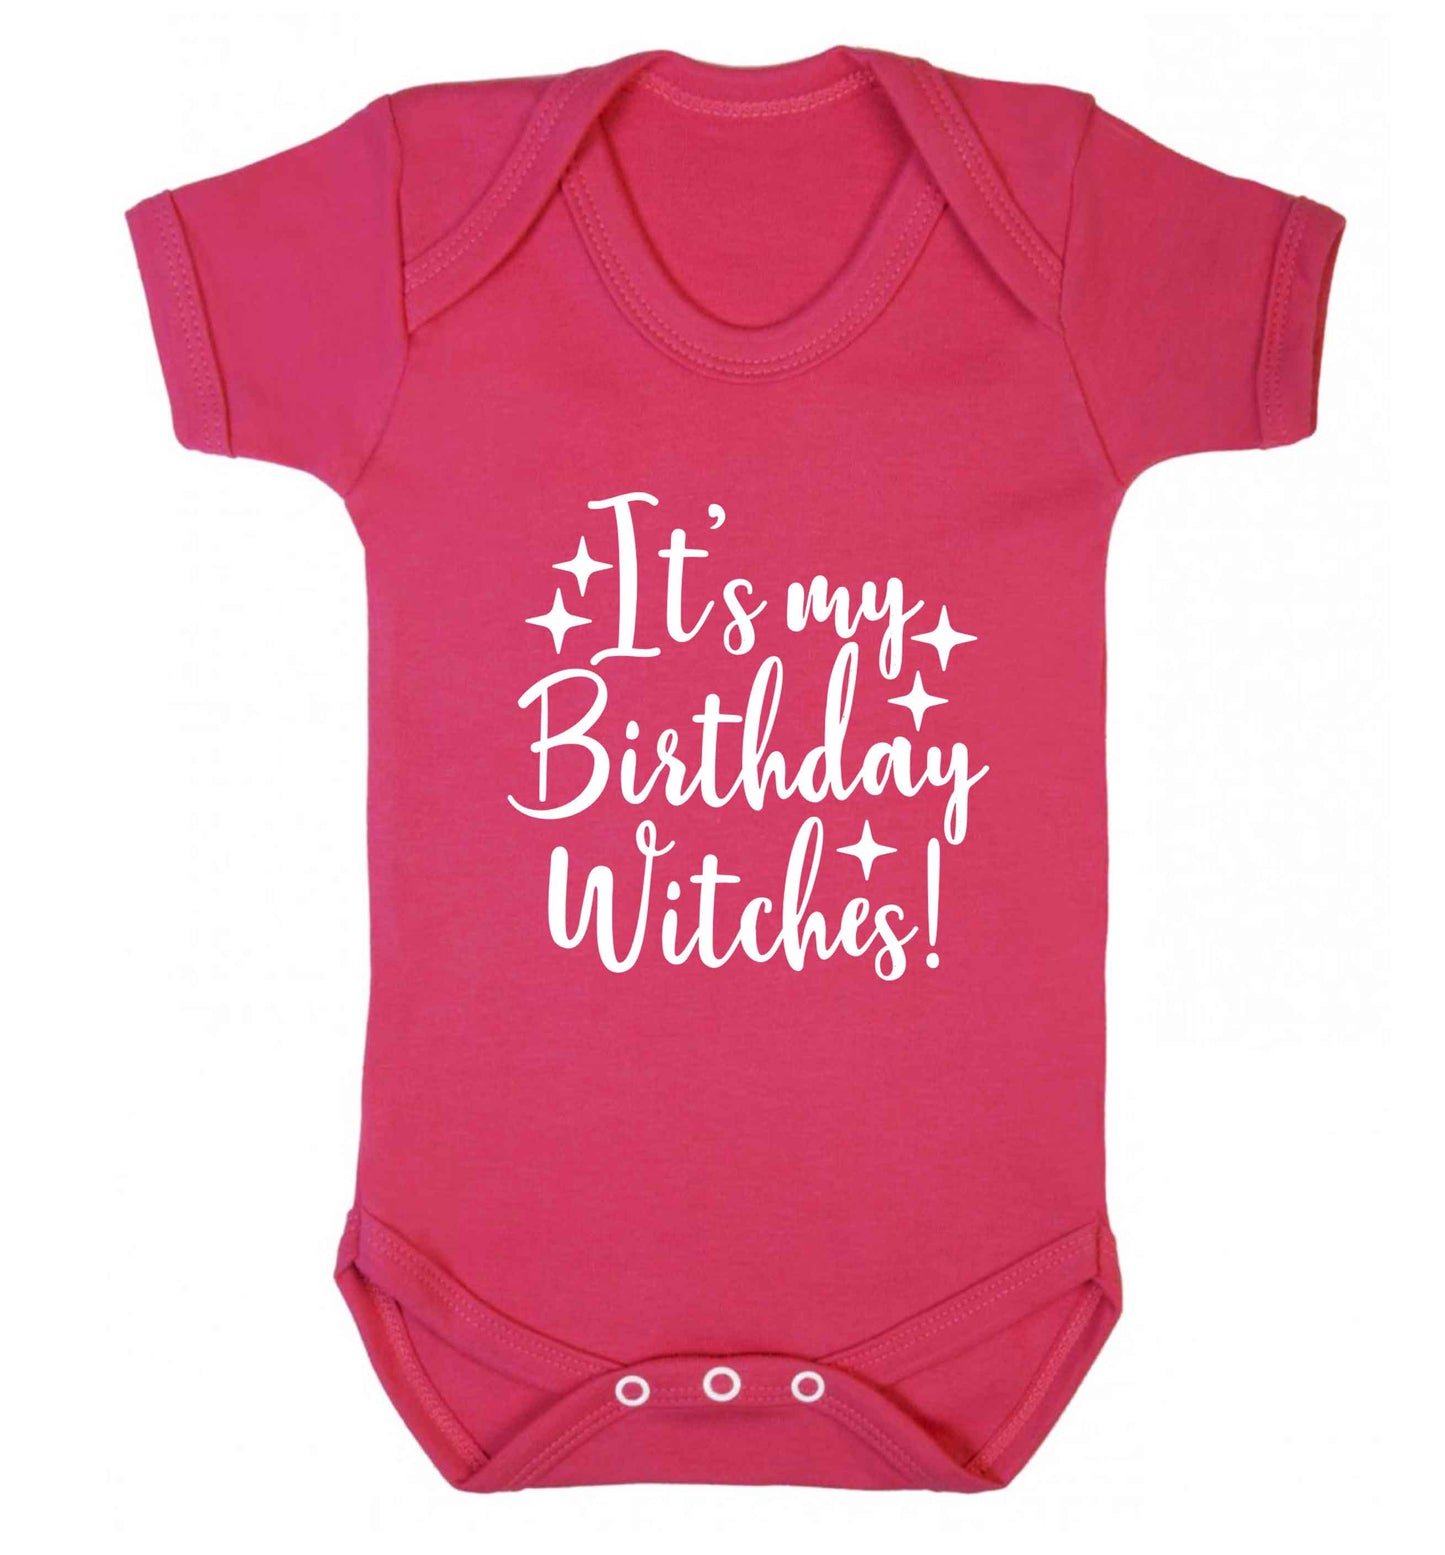 It's my birthday witches!baby vest dark pink 18-24 months